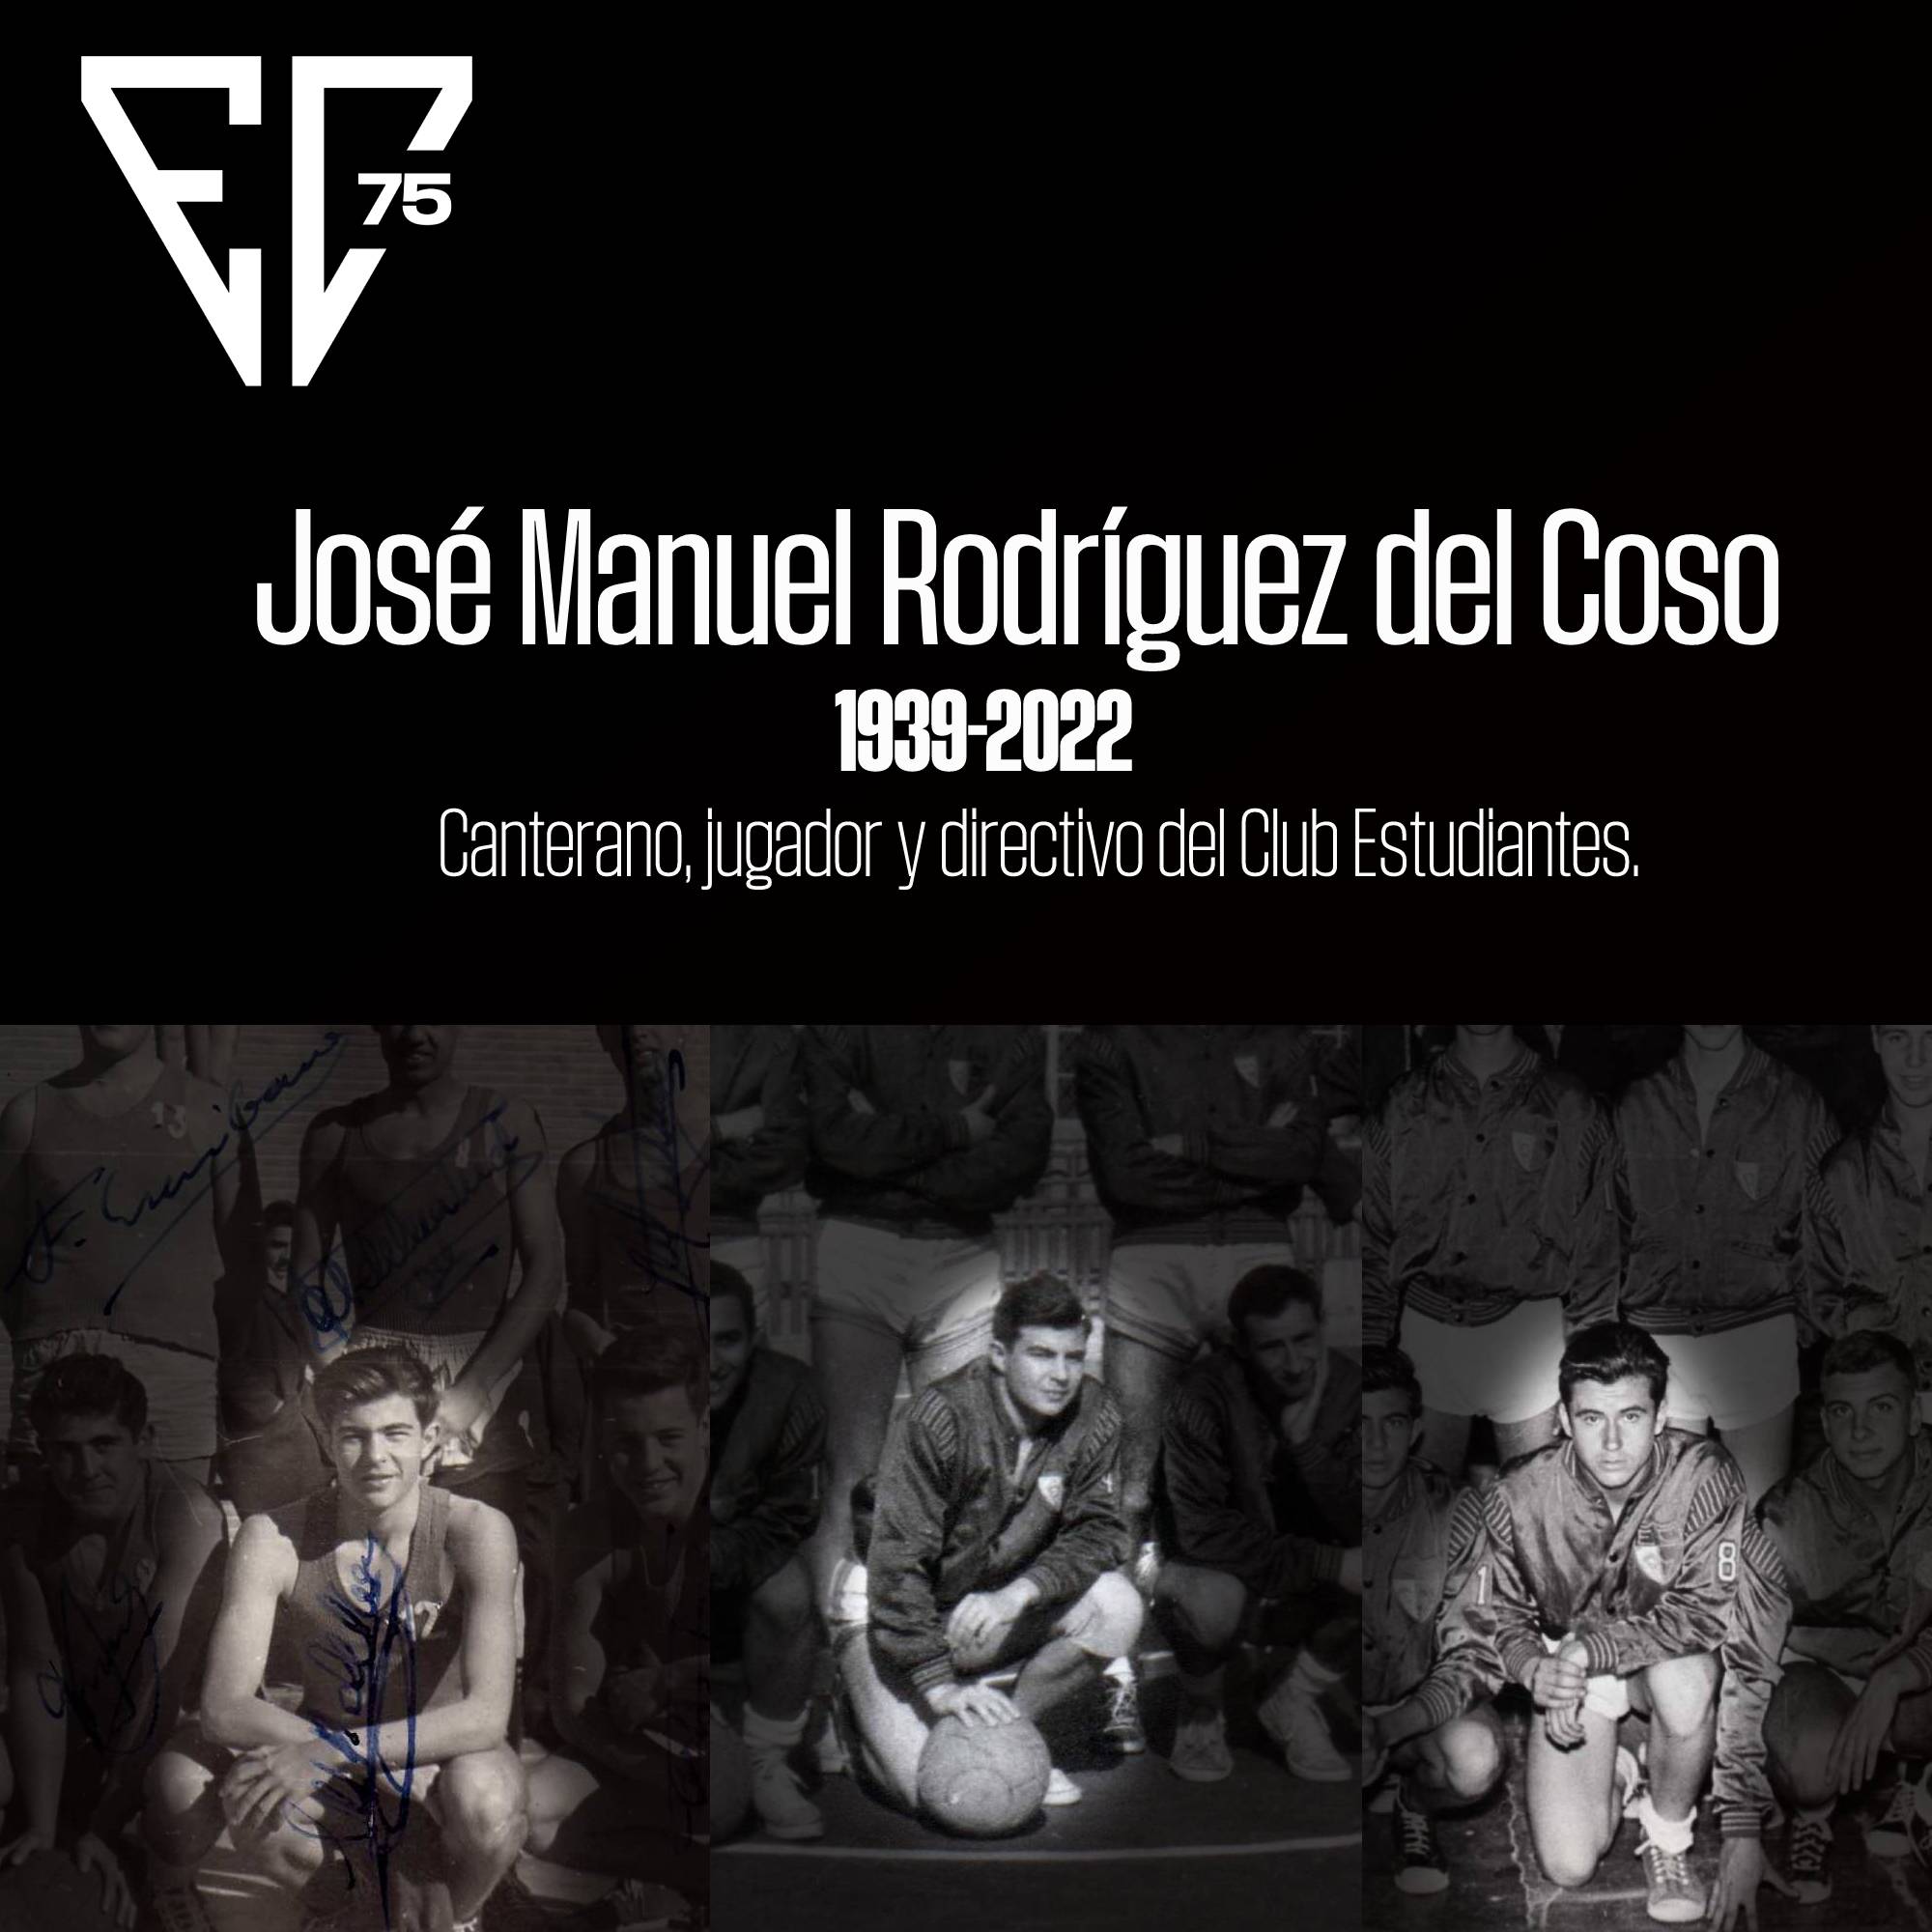 Descanse en paz José Manuel Rodríguez del Coso